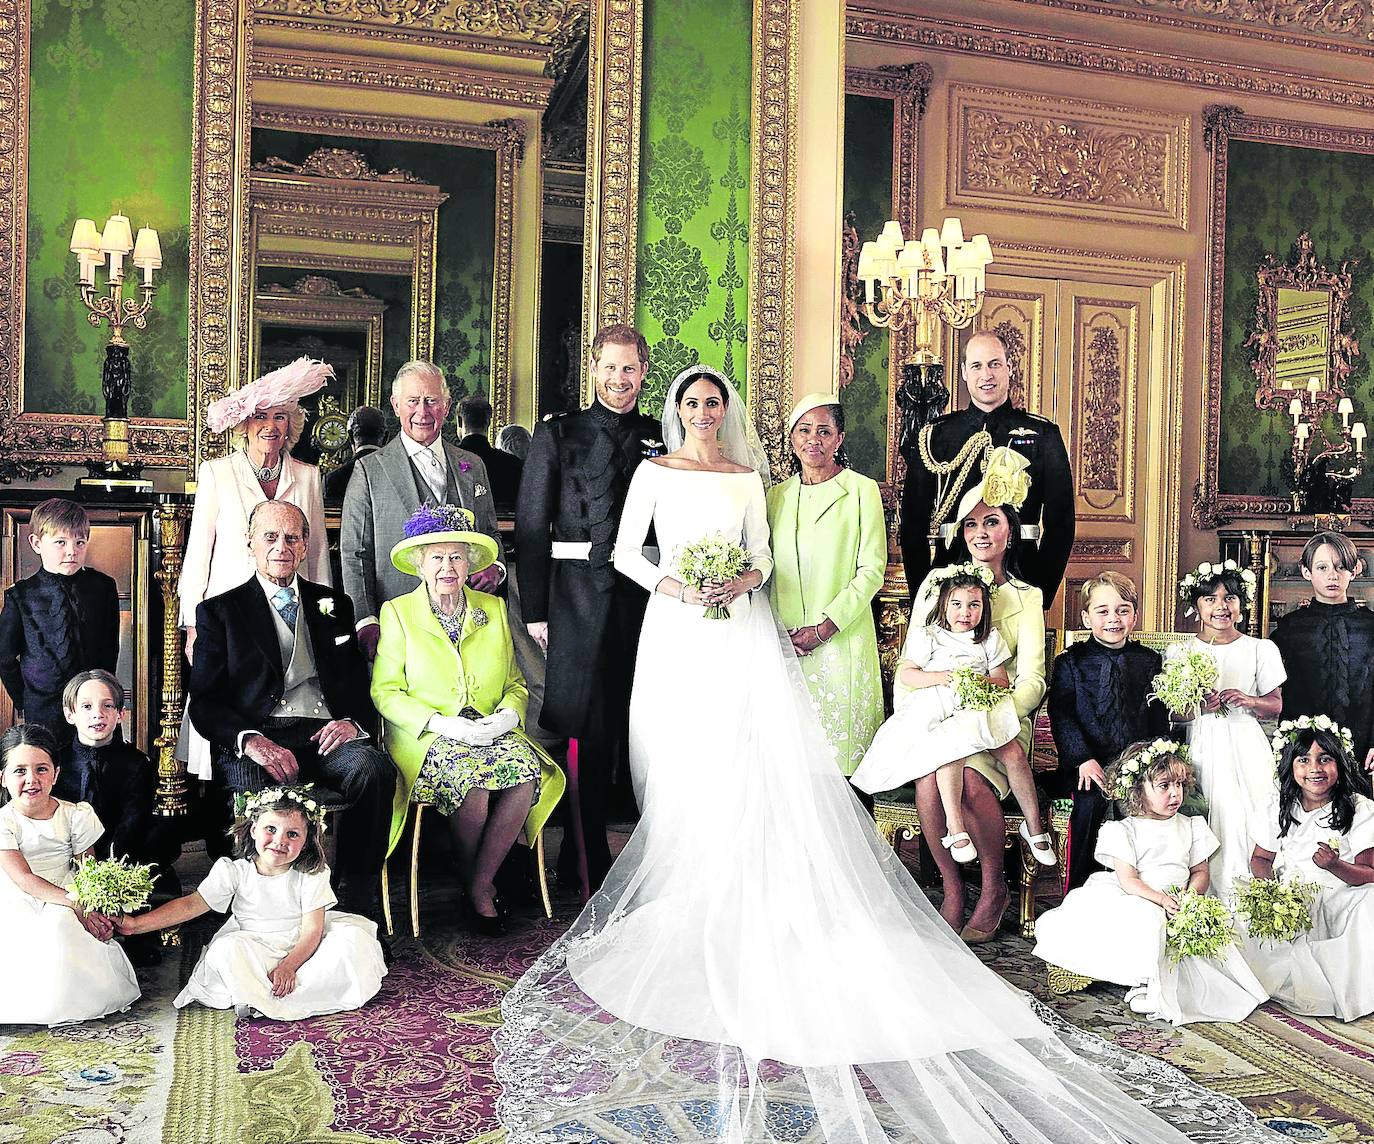 Fotografía oficial de la familia real británica tomada tras la boda de Meghan Markle y el príncipe Enrique./AFP